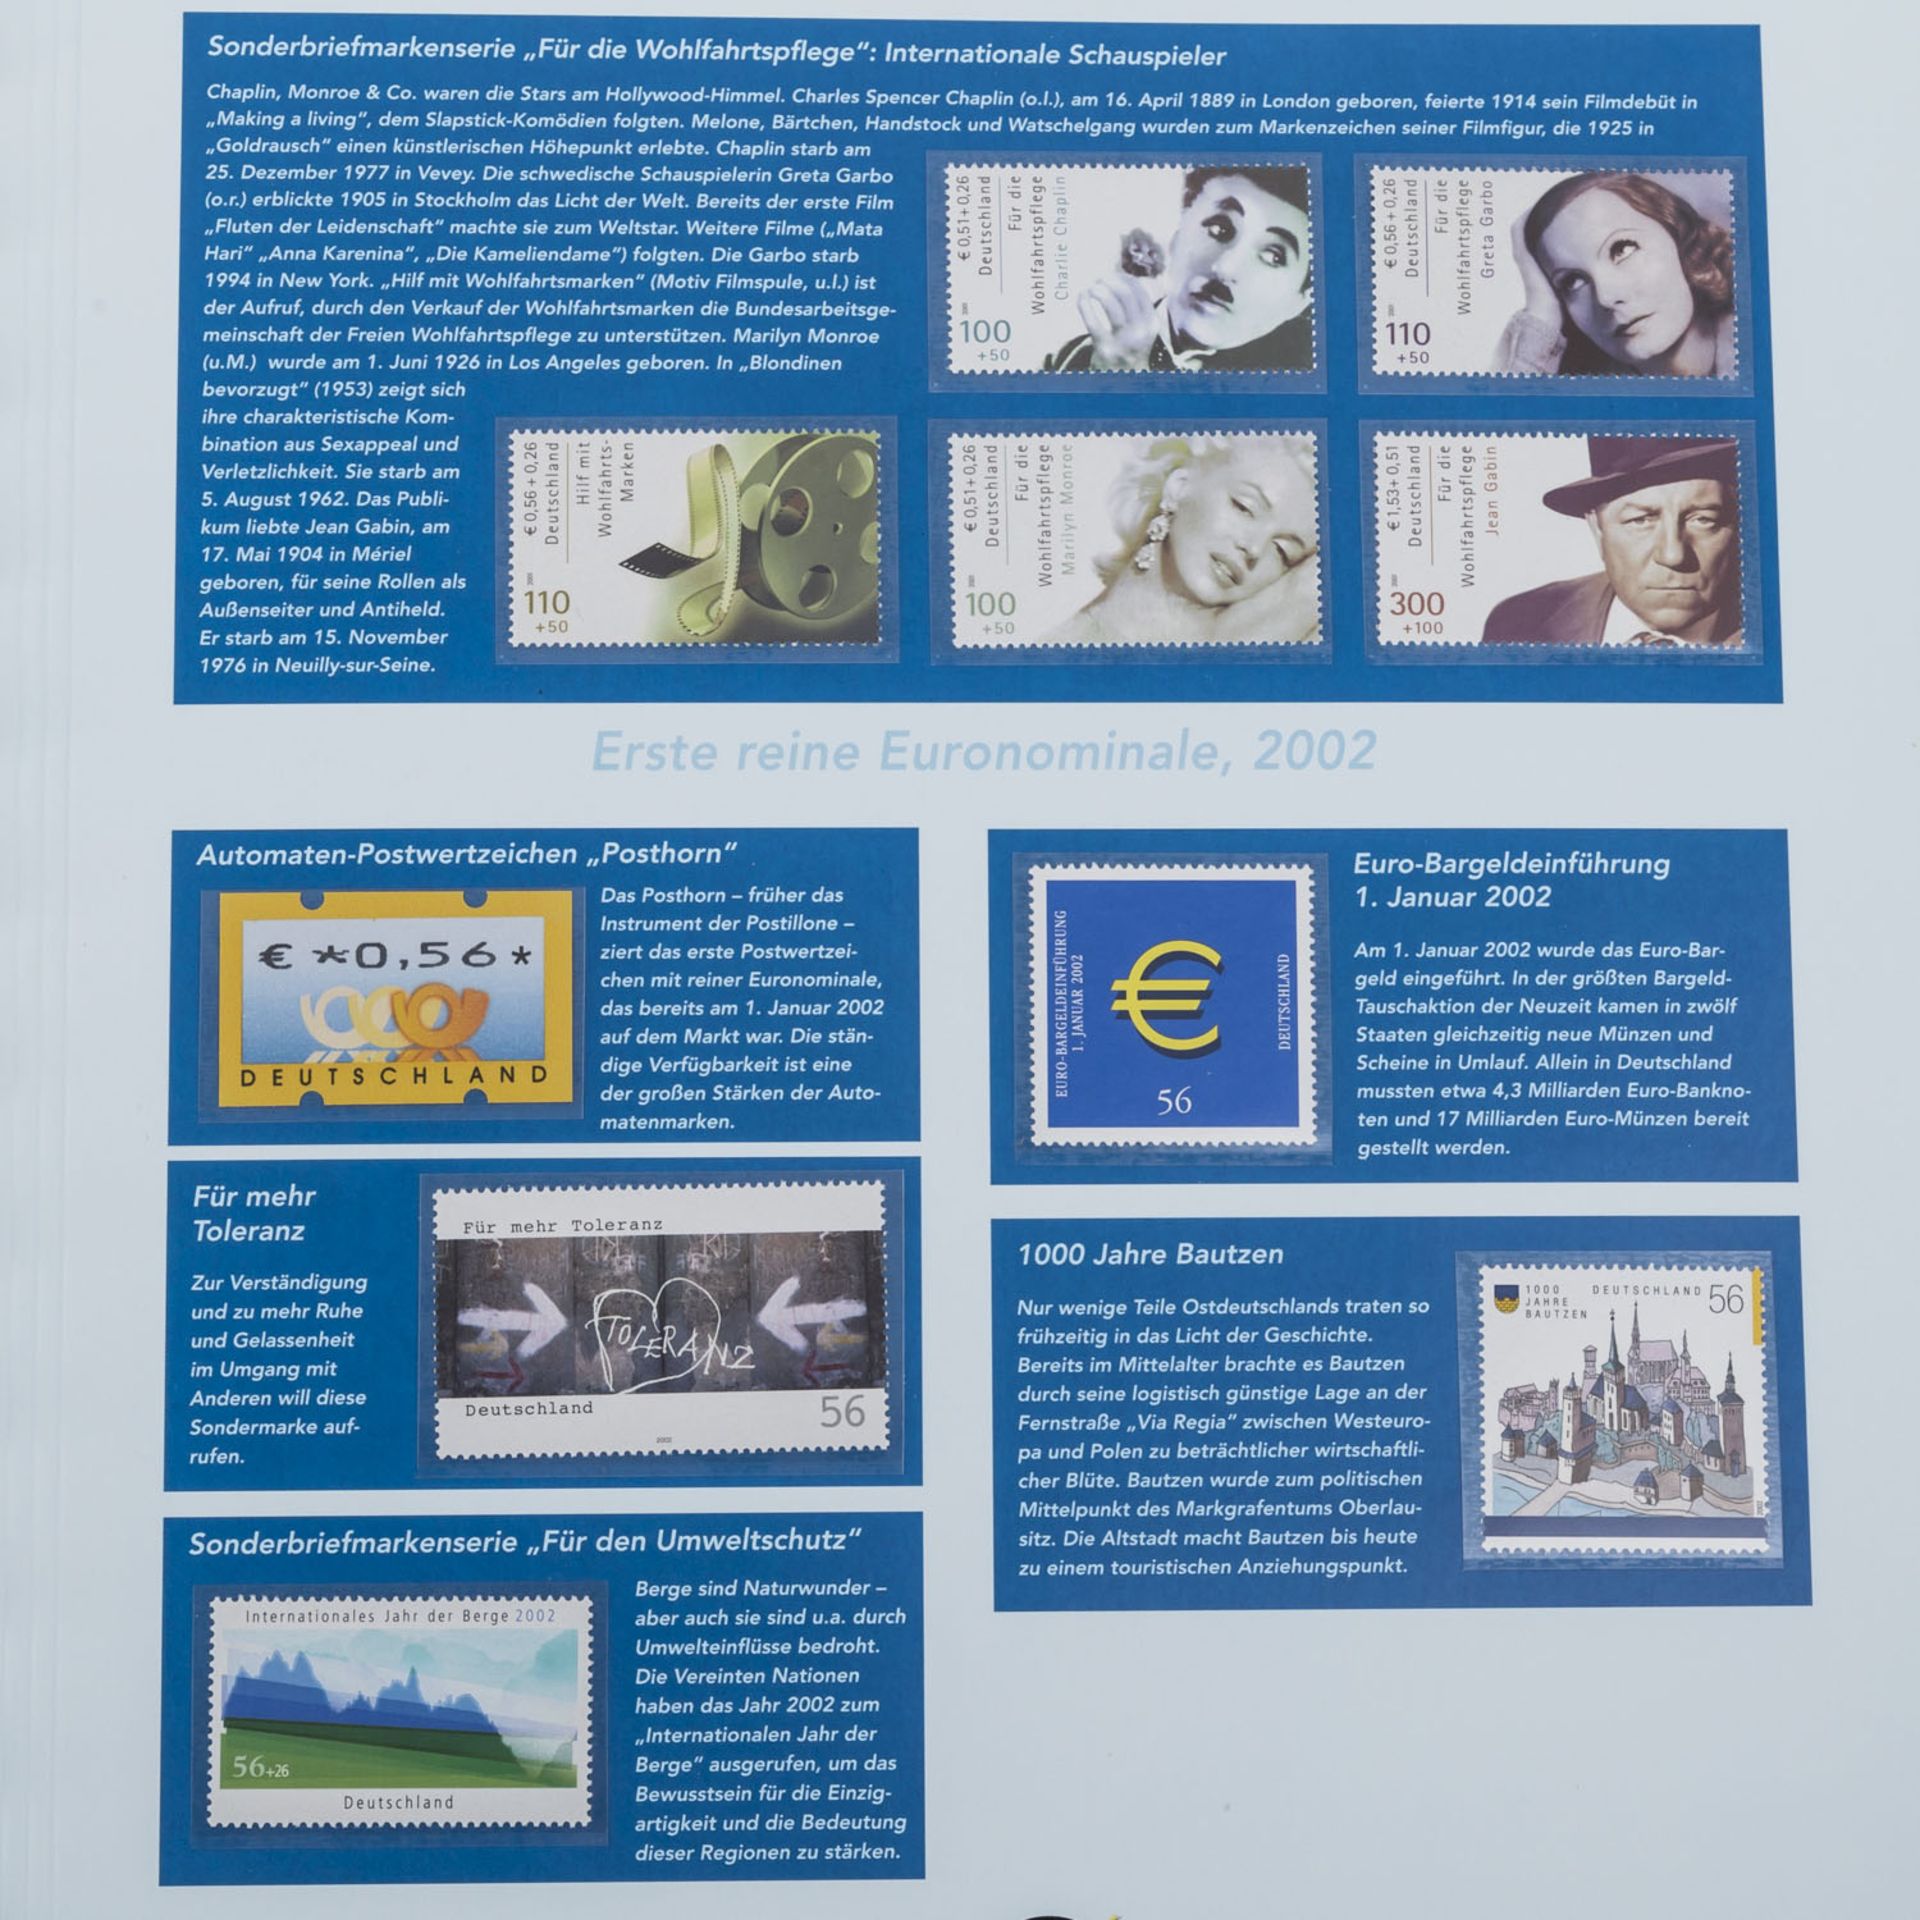 BRD Euro Briefmarken - Album mitDoppelnominale DEM / Euro und Euro, aus 2001/2, ca. 70 Euro.FRG - Bild 2 aus 2